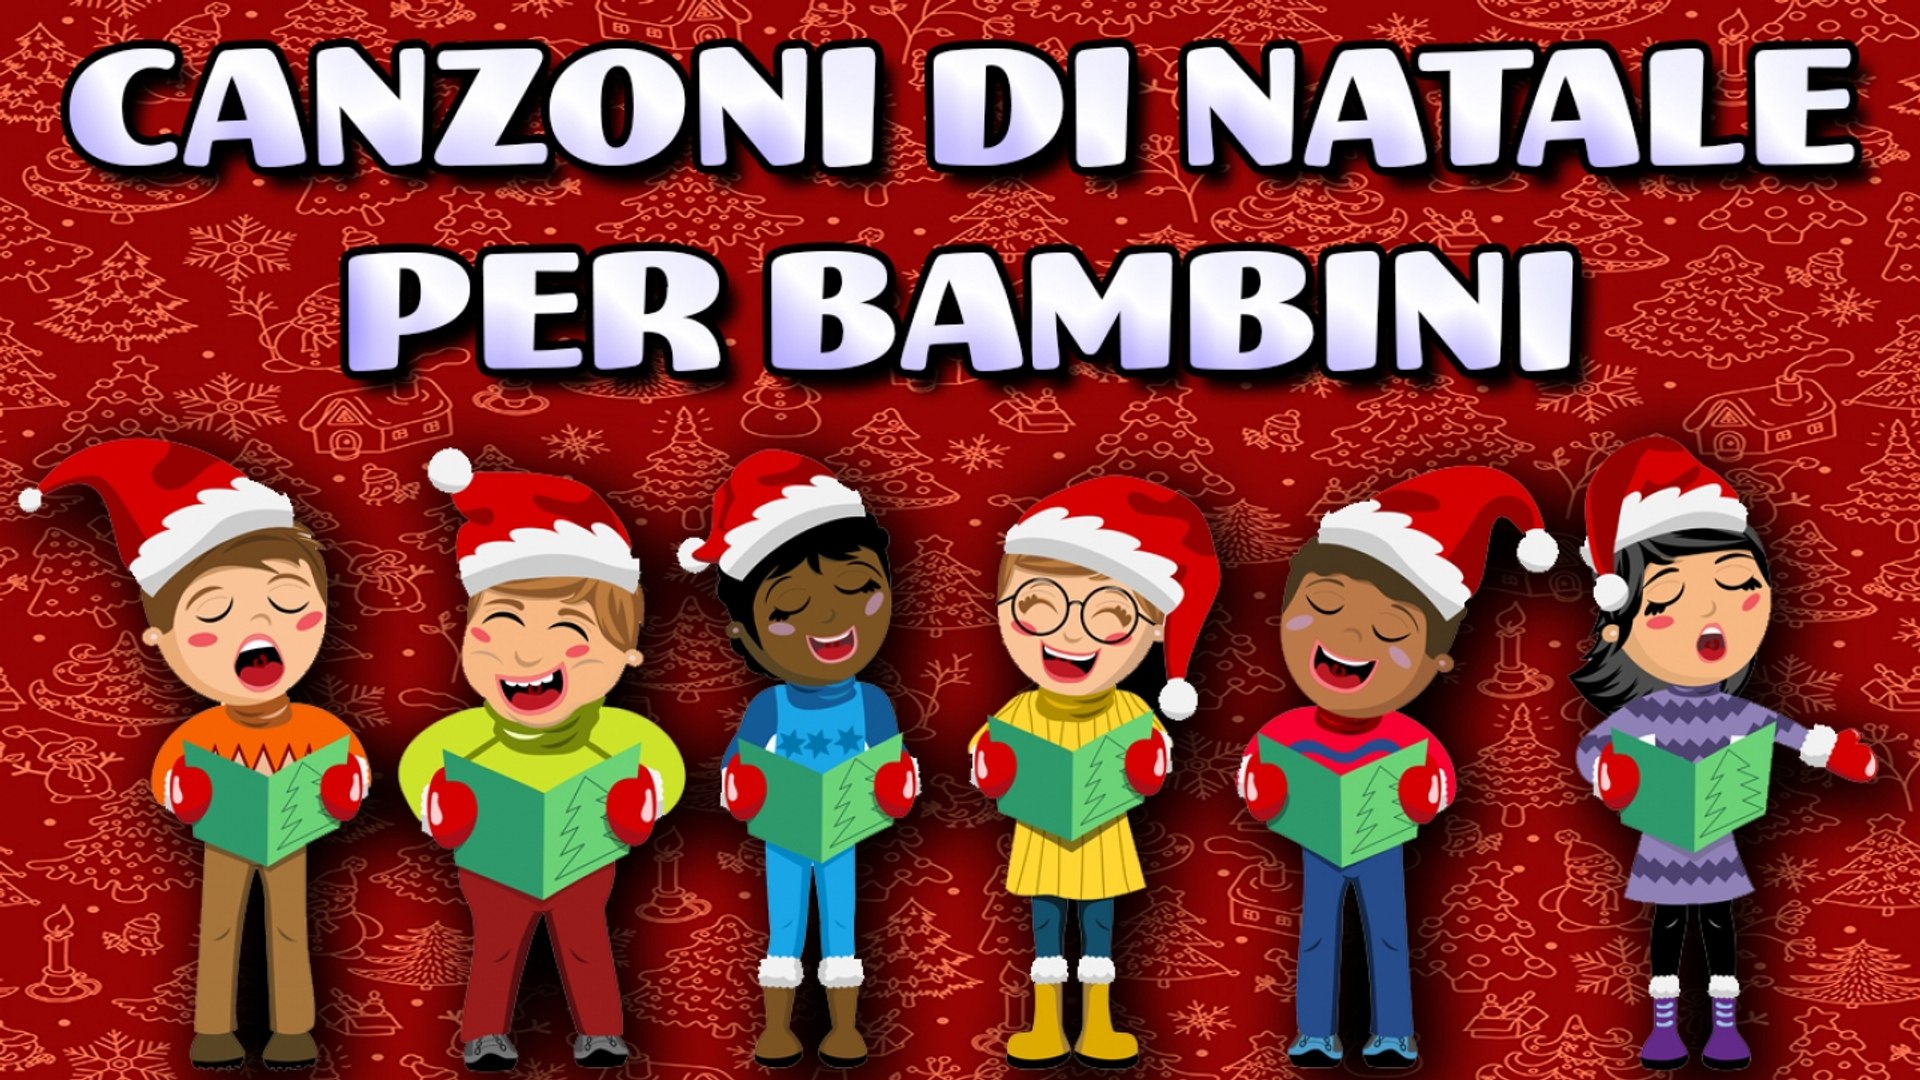 Canzoni Di Natale Per Bambini.Va Canzoni Di Natale Per Bambini 2019 Natalebambini Video Dailymotion